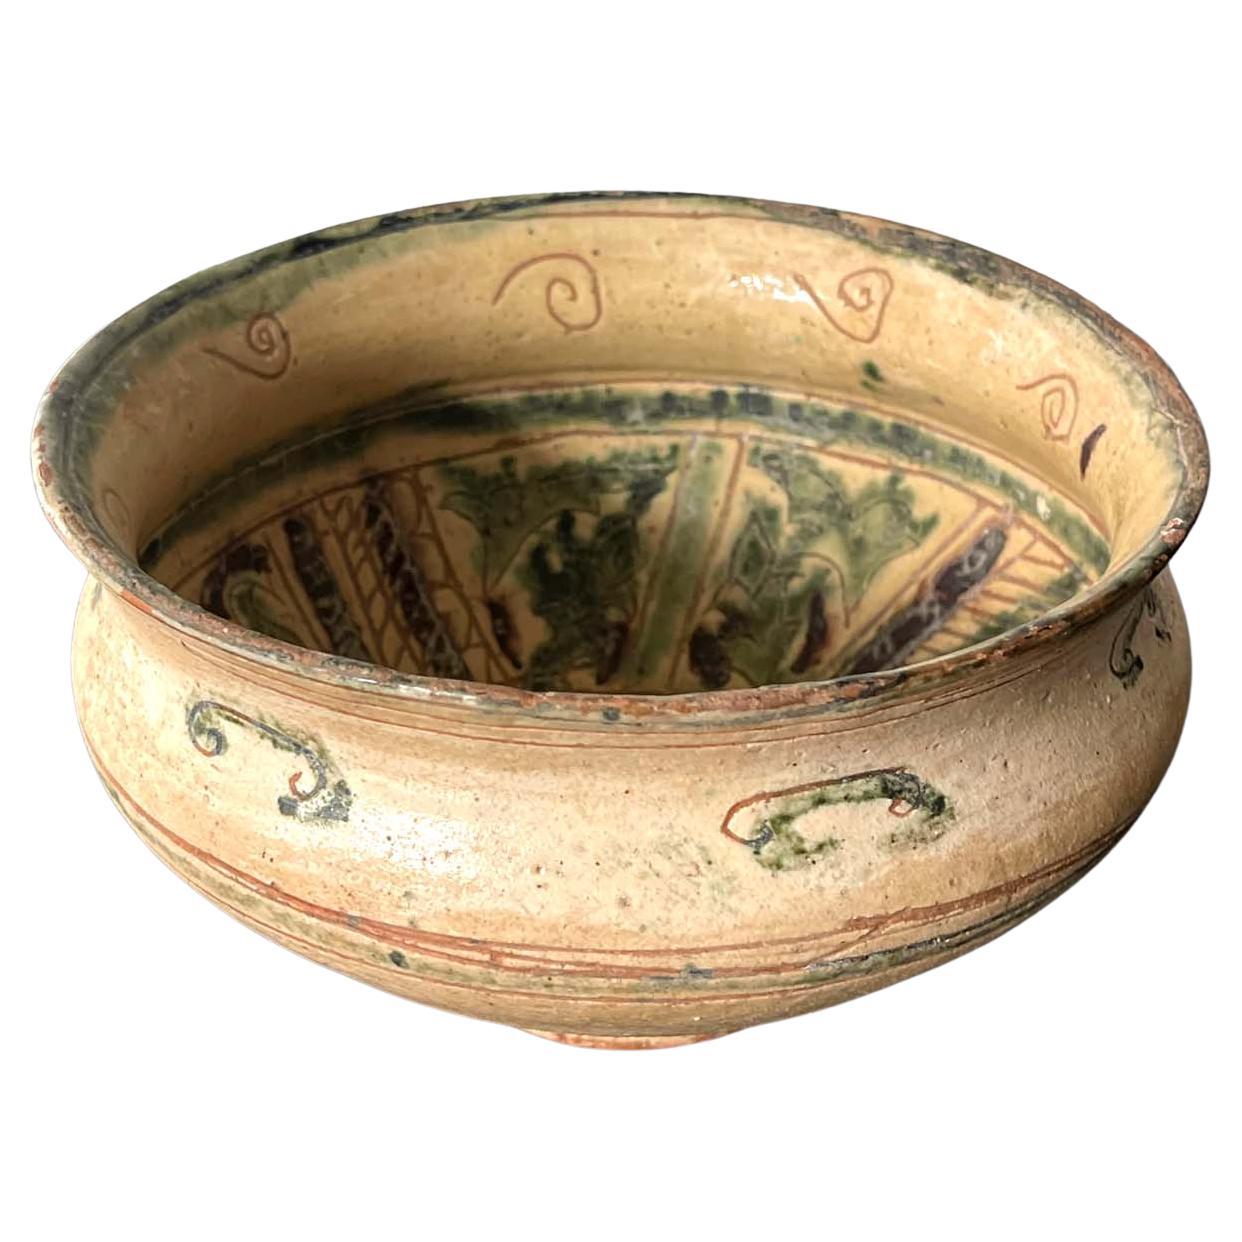 Antike islamische glasierte Keramikschale aus Keramik mit Spritzer- und Sgraffitodekoration